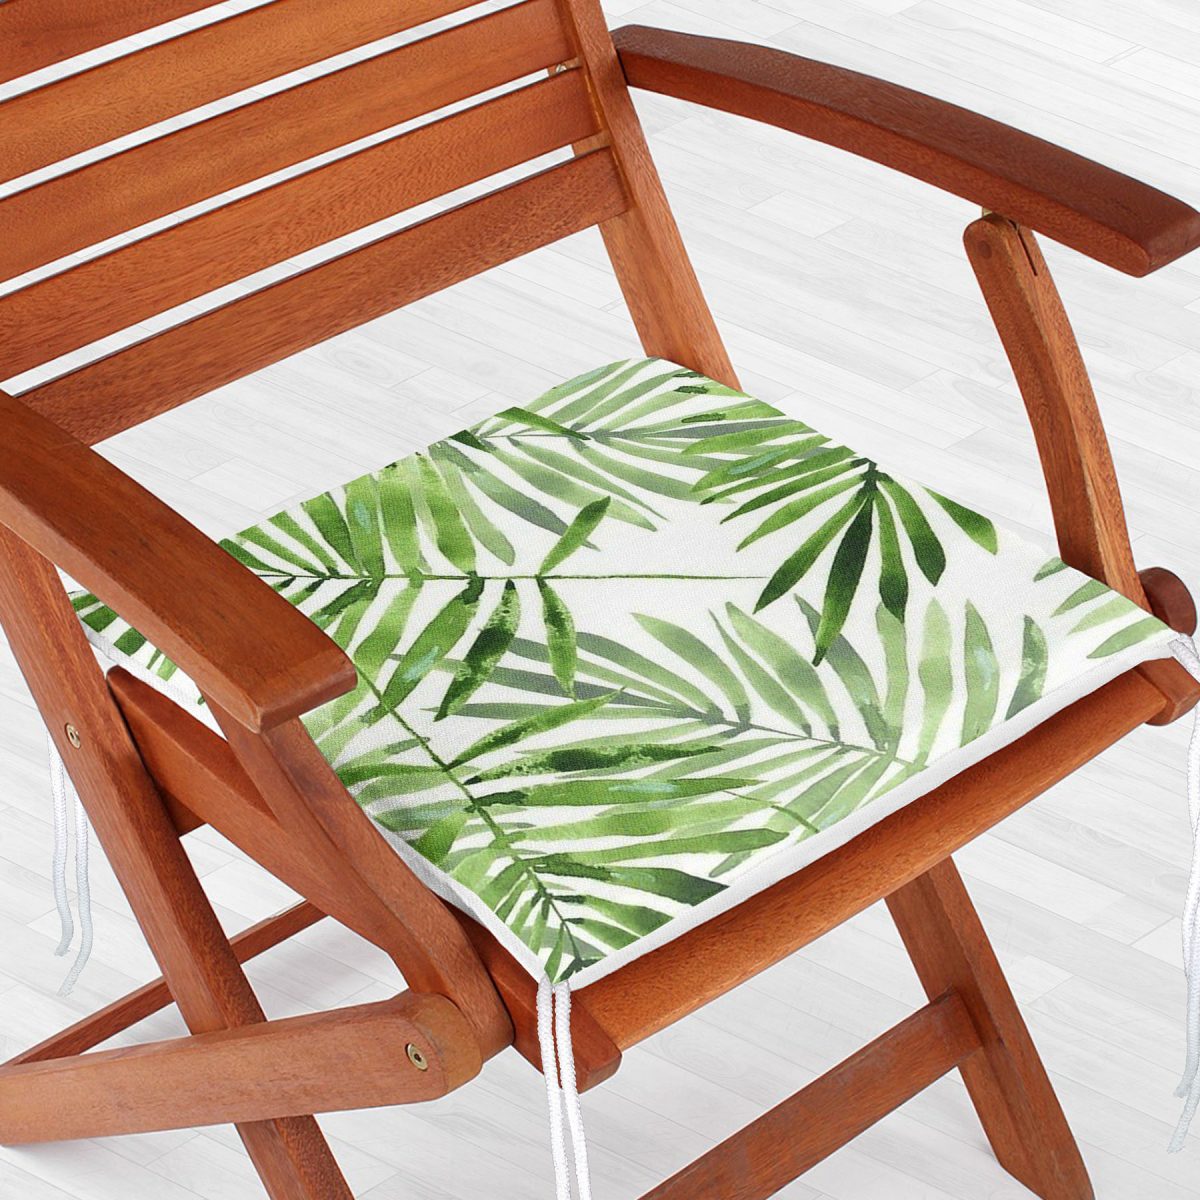 Suluboya İnce Yapraklar Modern Tasarımlı Dekoratif Fermuarlı Sandalye Minderi Realhomes